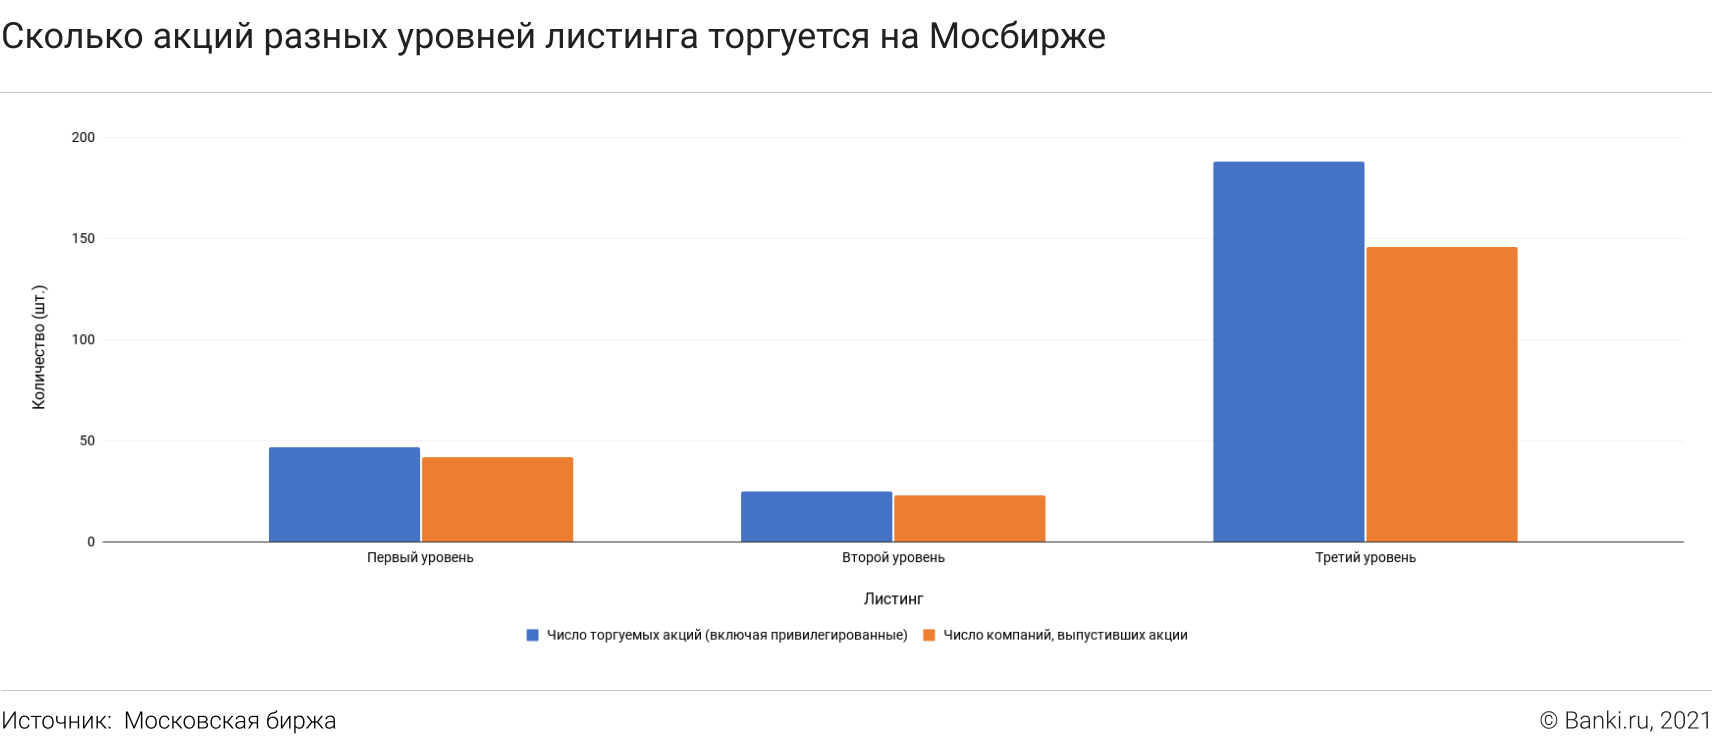 Количество акций на Мосбирже по уровням